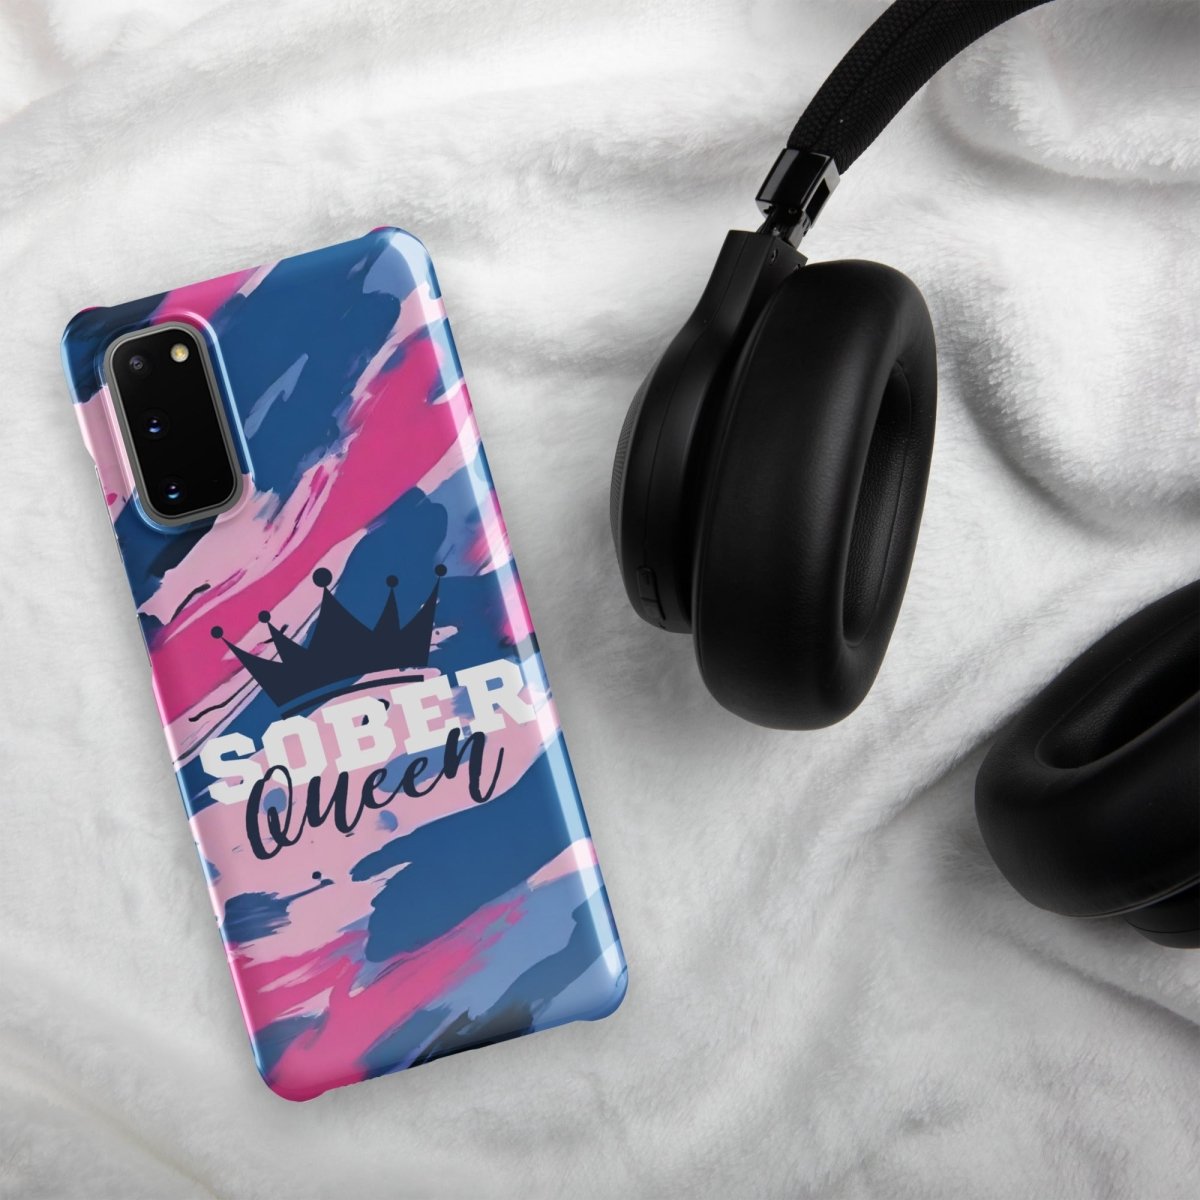 Sober Queen Samsung? Snap Case - Sleek Protection, Royal Inspiration